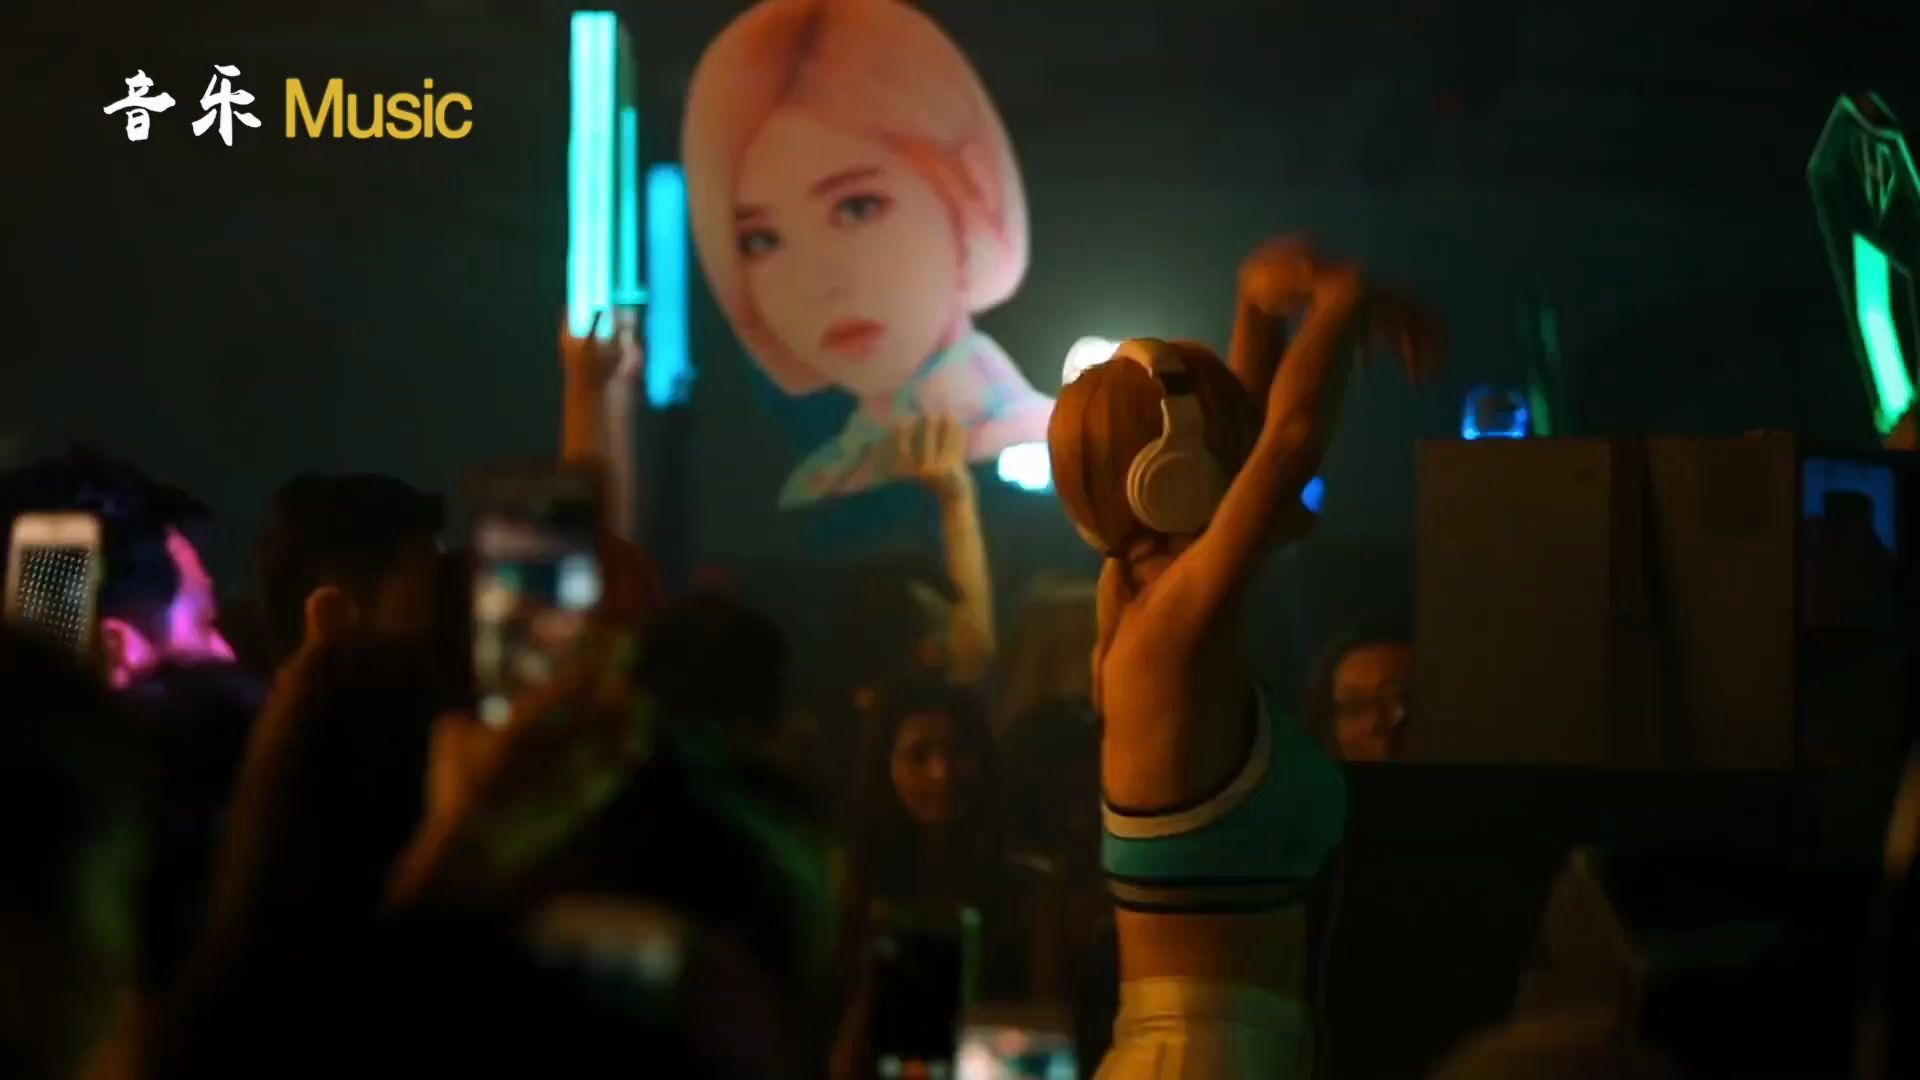 女神专题41:DJ Soda(黄素熙)- 韩国无人不晓的美人DJ - 哔哩哔哩